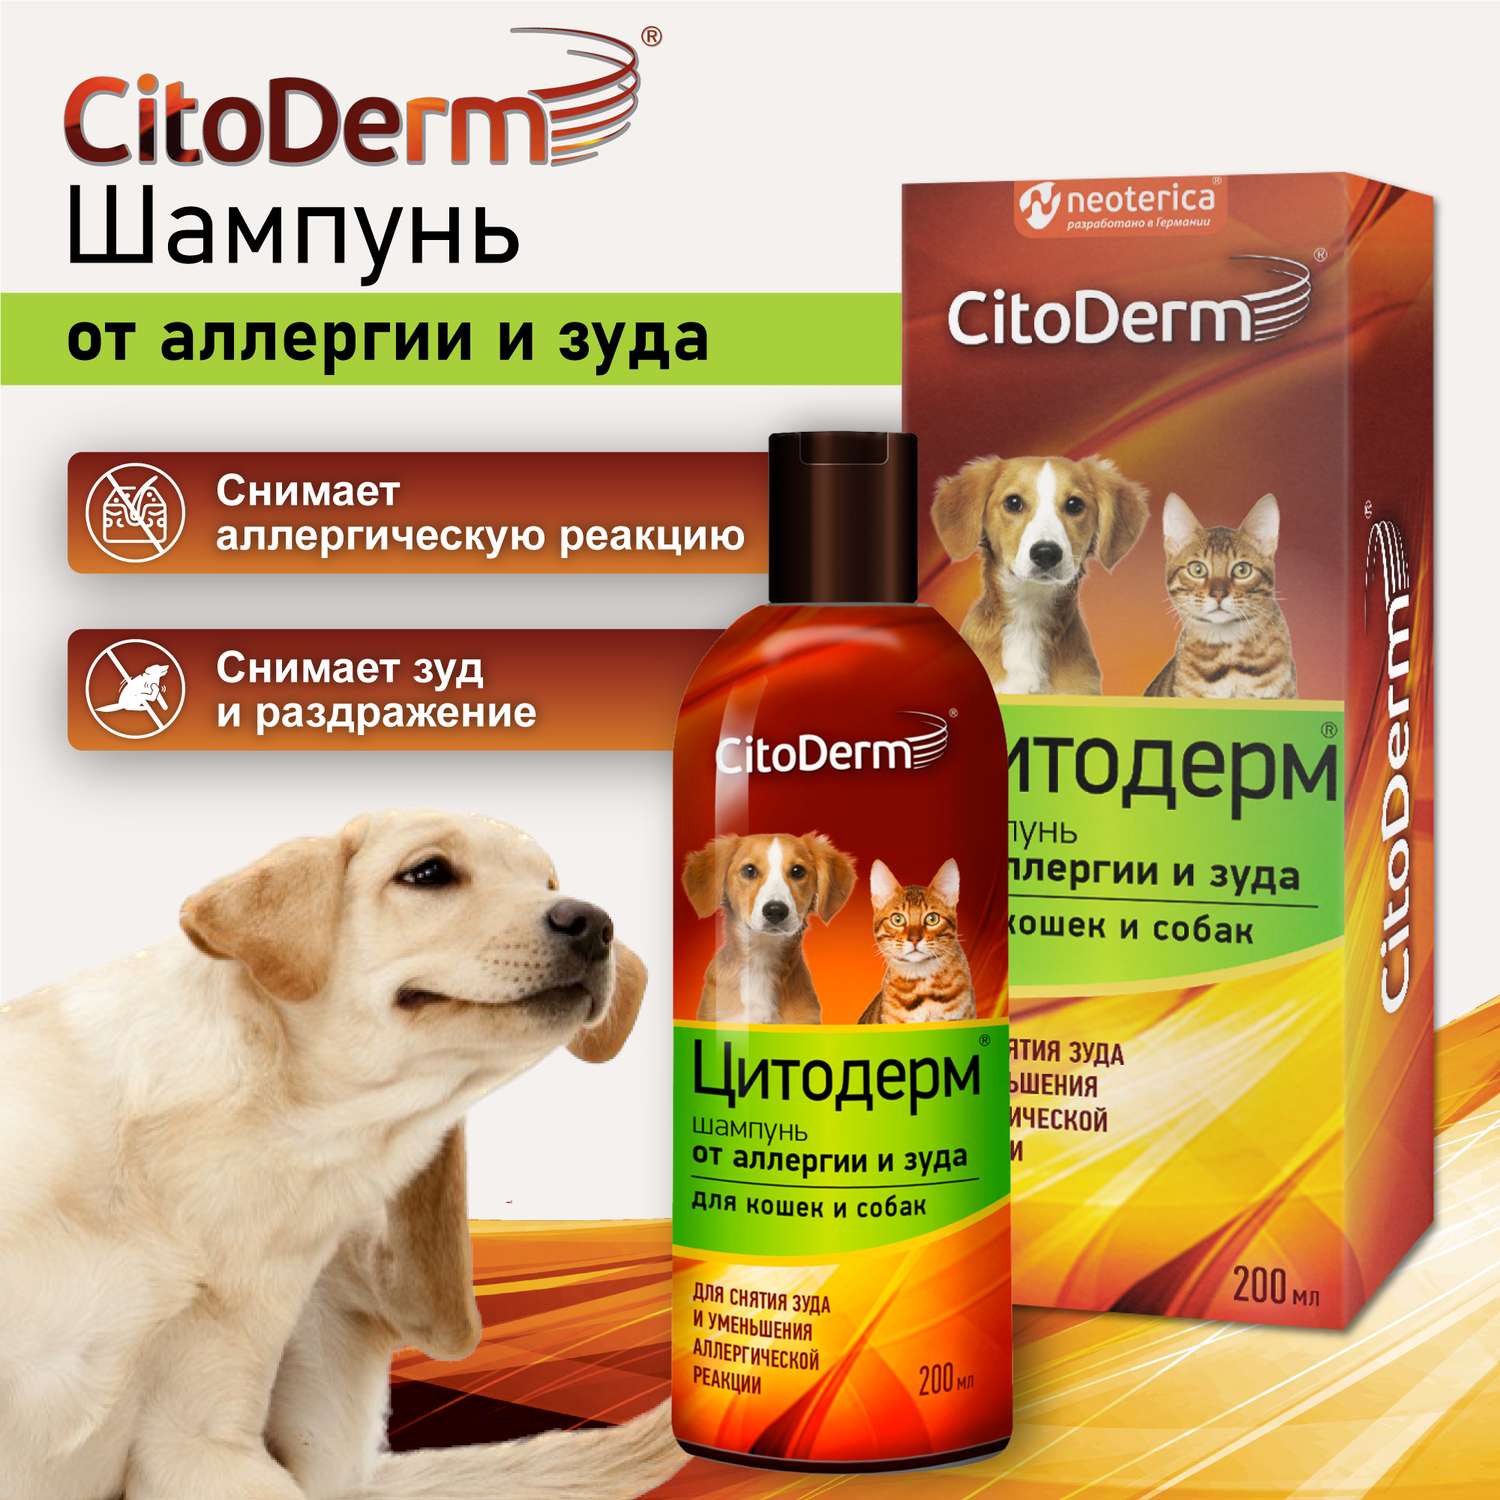 Шампунь для кошек и собак CitoDerm от аллергии и зуда 200мл - фото 3